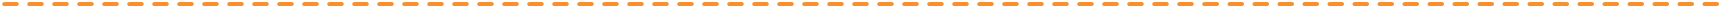 orangeDotted